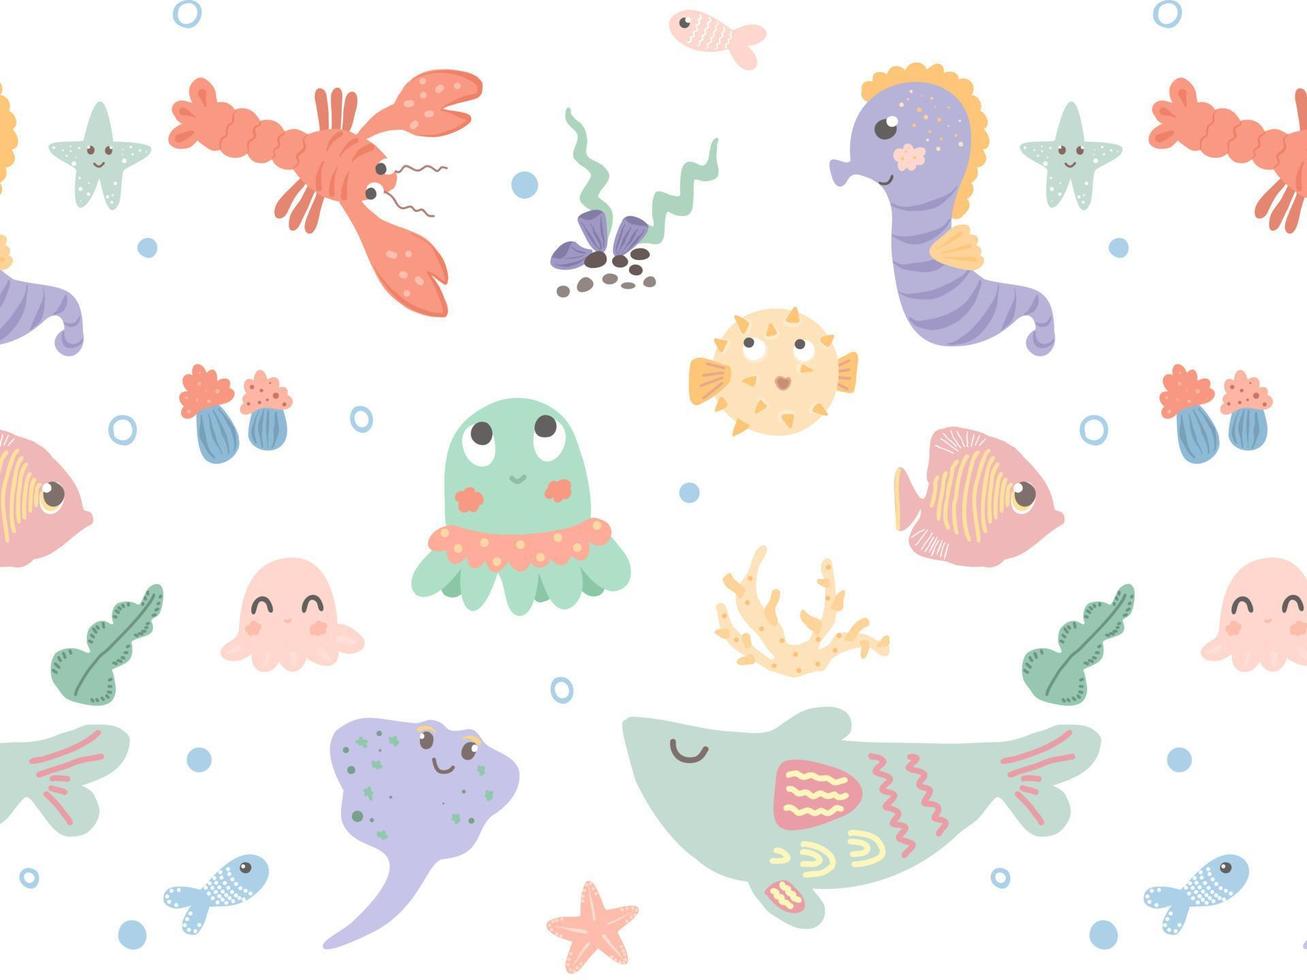 Muster der Unterwasserwelt. Zeichentrickfiguren unter Wasser. Wale, Fische, Seesterne, Tintenfische. handgezeichnetes Muster für Kindertextilien, Tapeten, Stoffe. vektor